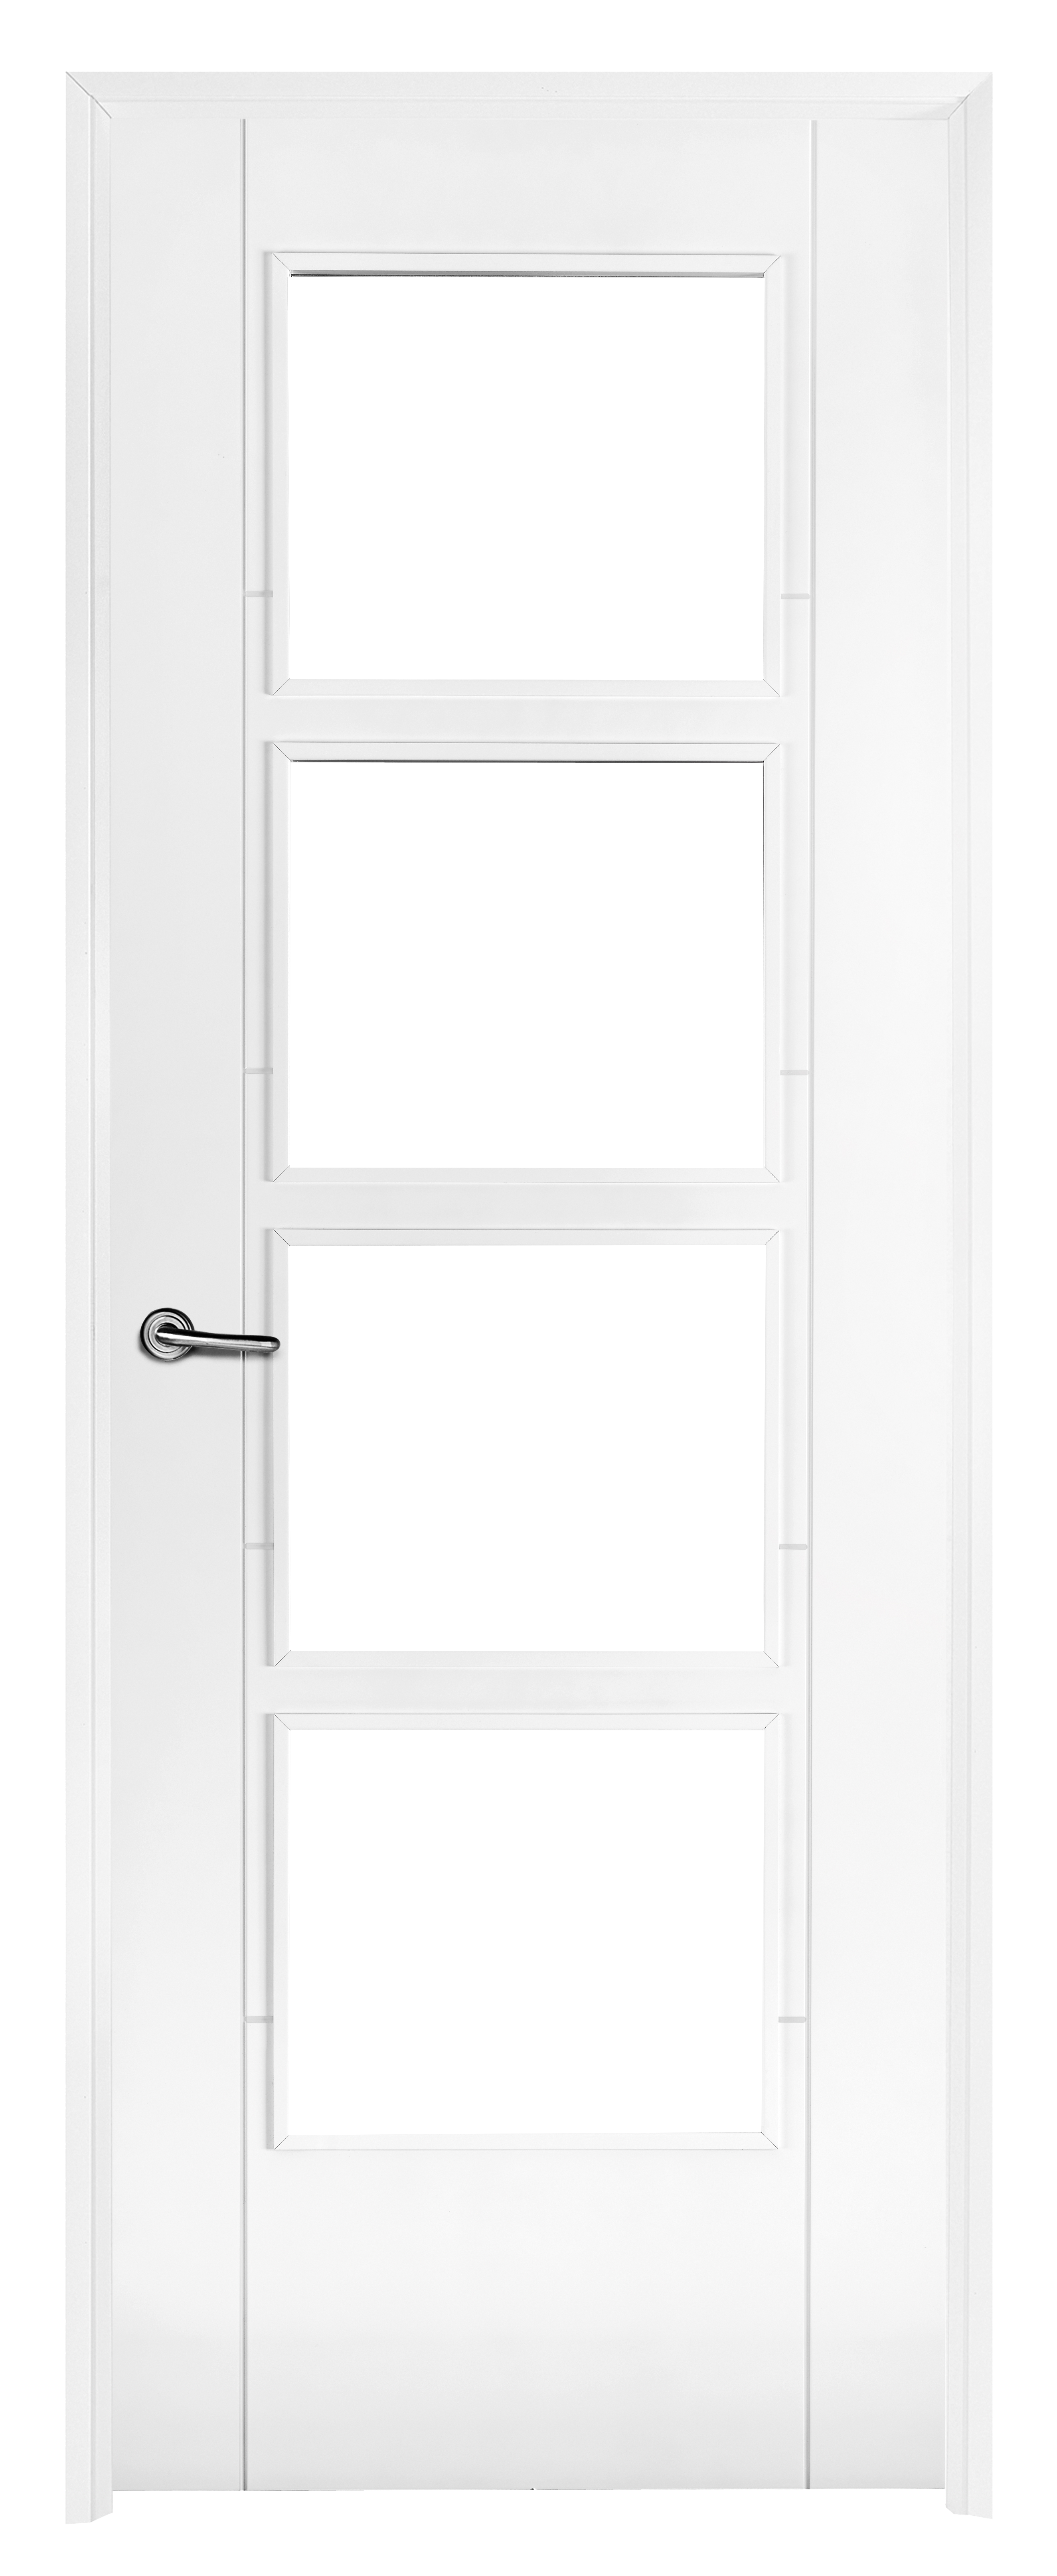 Puerta noruega blanco apertura izquierda con cristal 62.5cm